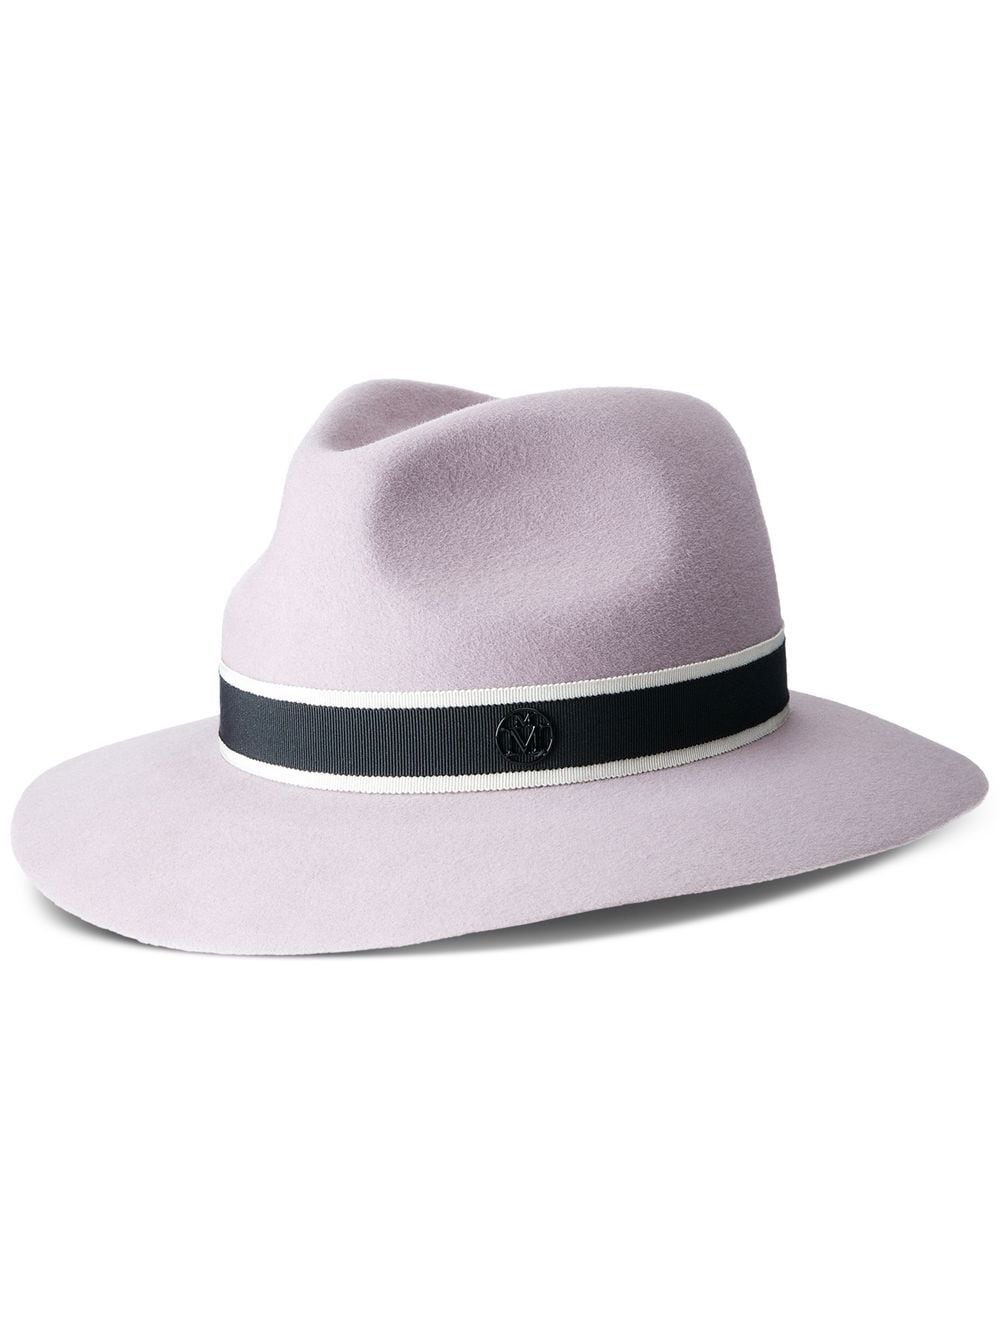 Maison Michel Rico fedora hat - Neutrals von Maison Michel